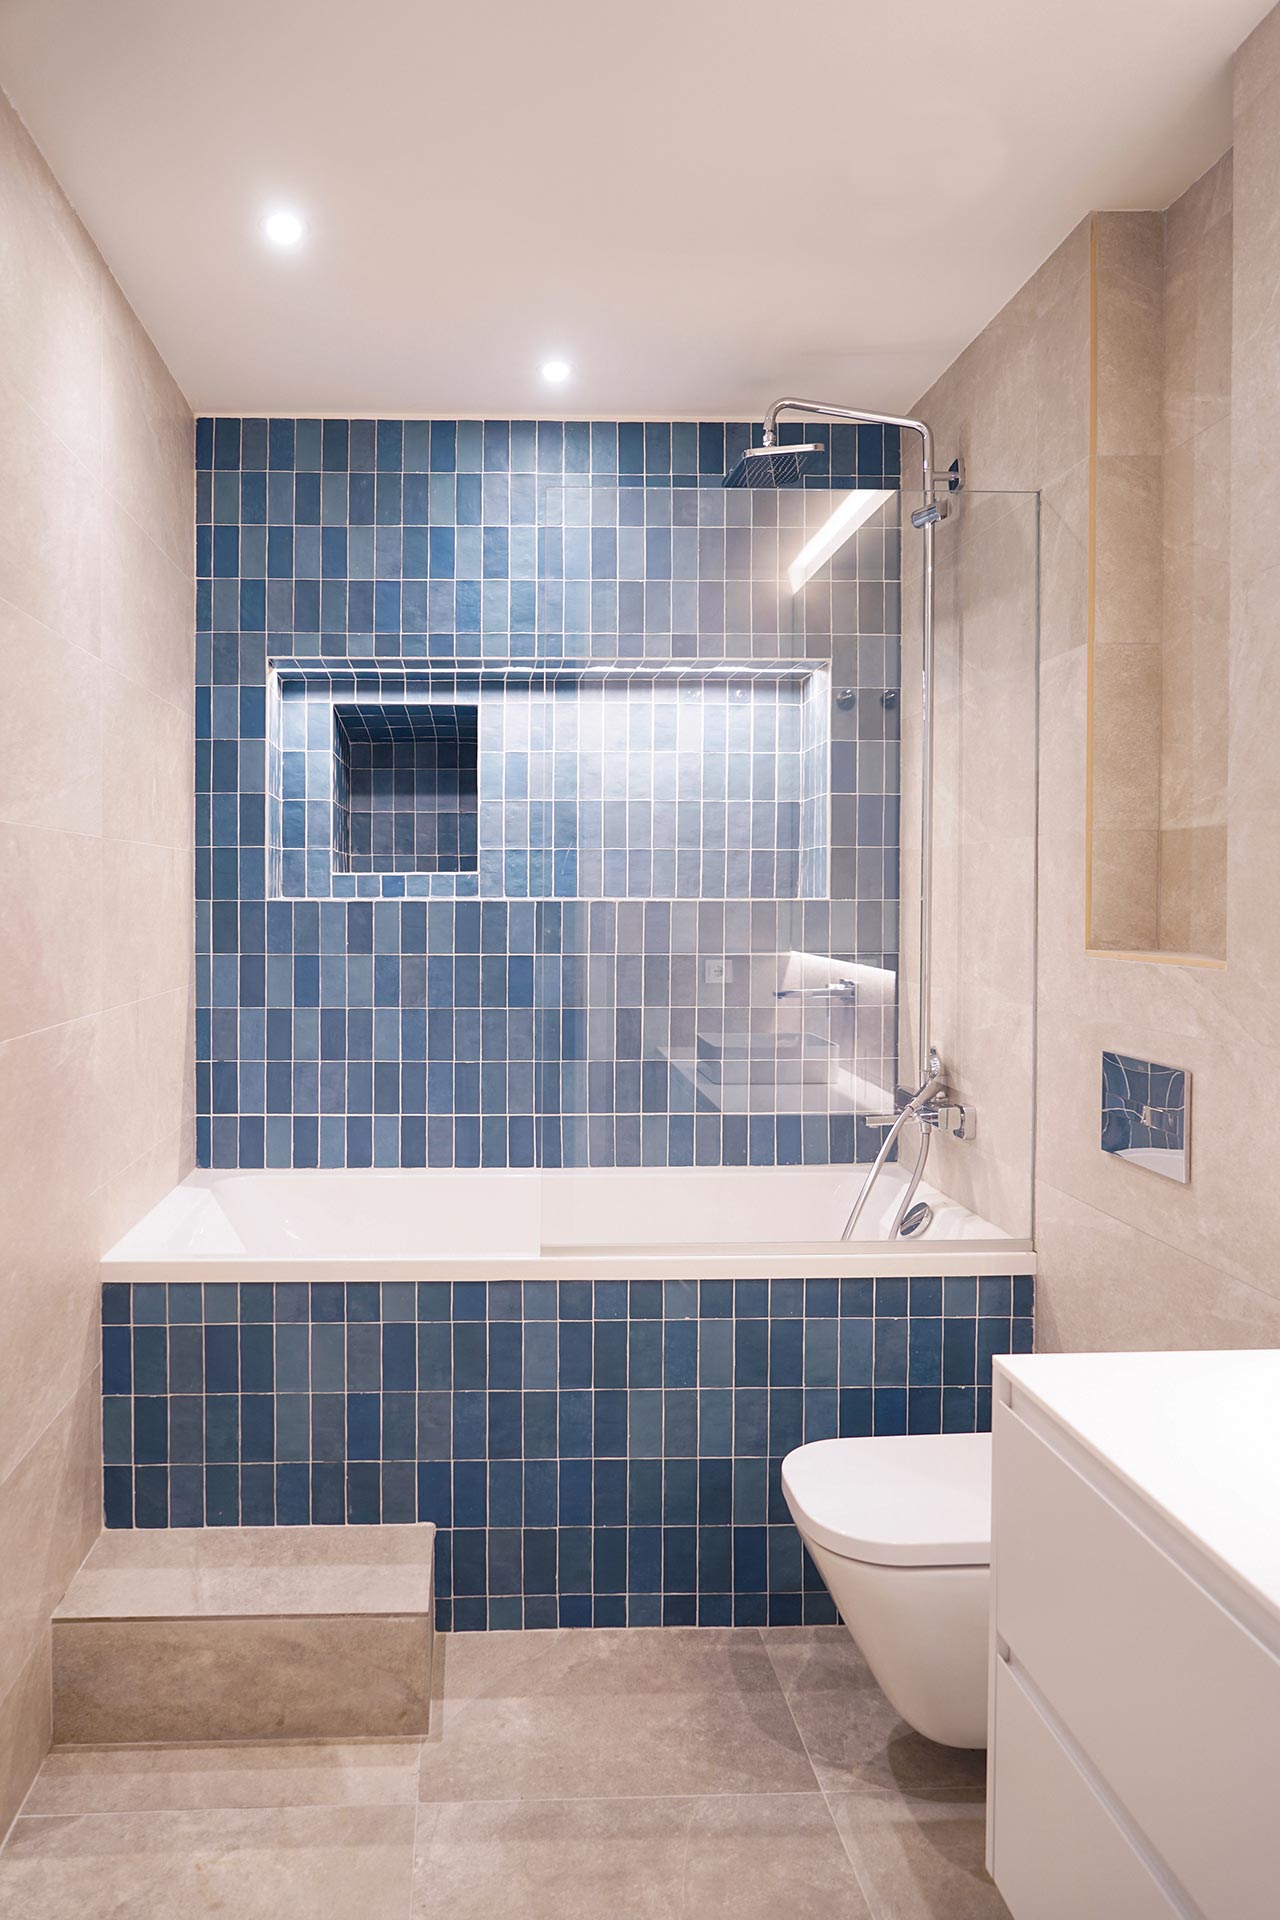 Baño con mampara de ducha en reforma de vivienda moderna diseñada por Moah Arquitectos en Santander